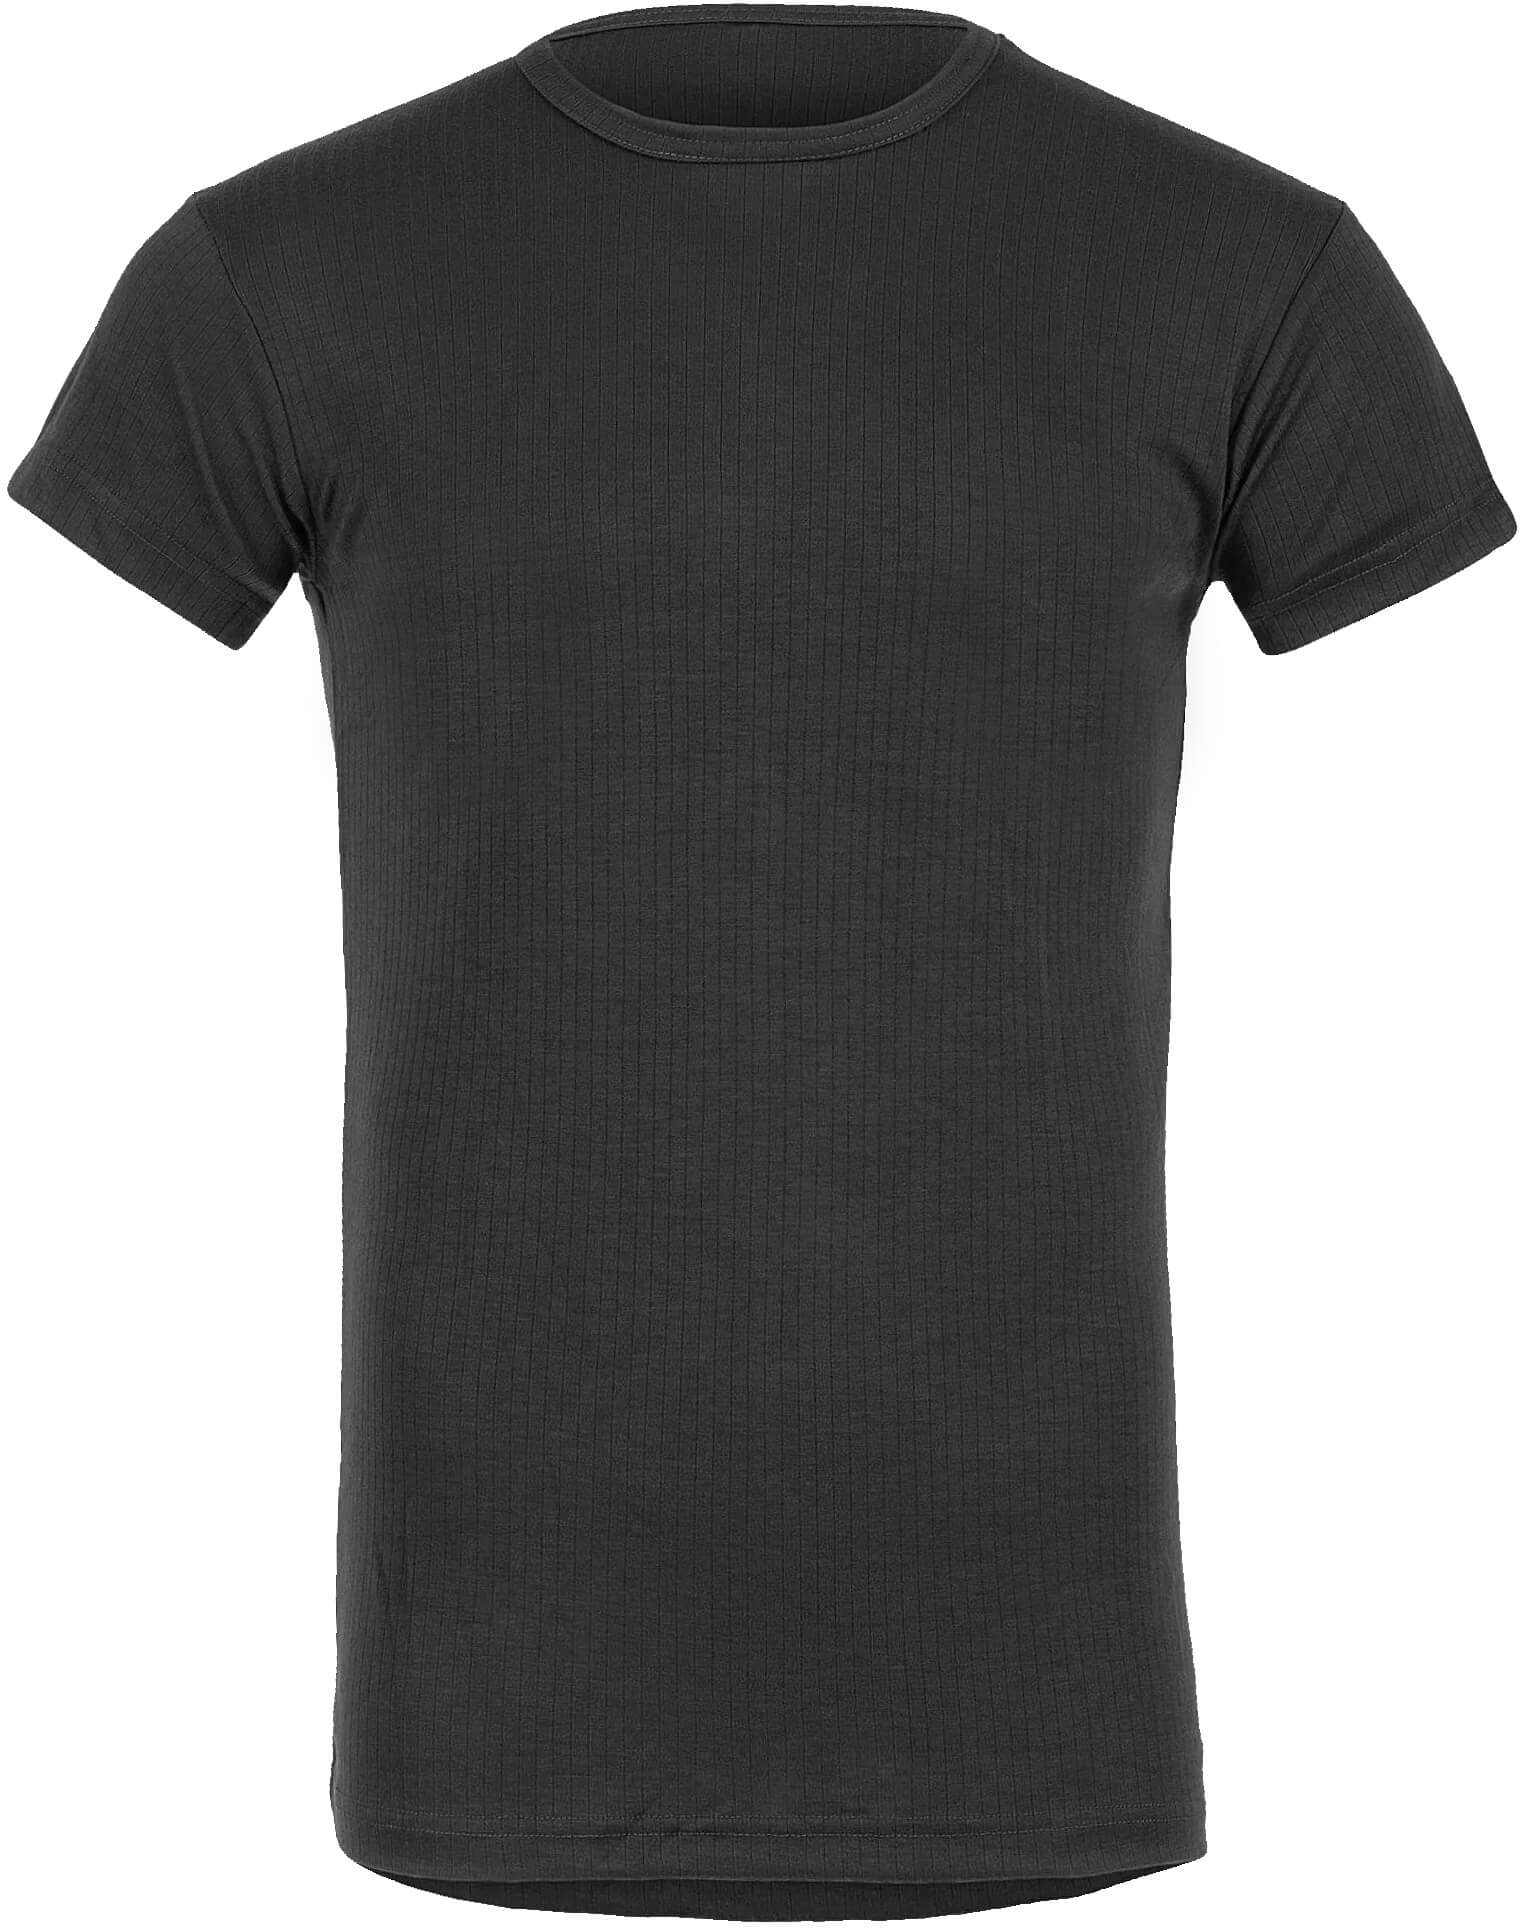 Highlander Thermal Unterhemd kurzarm (Sale) schwarz, Größe M